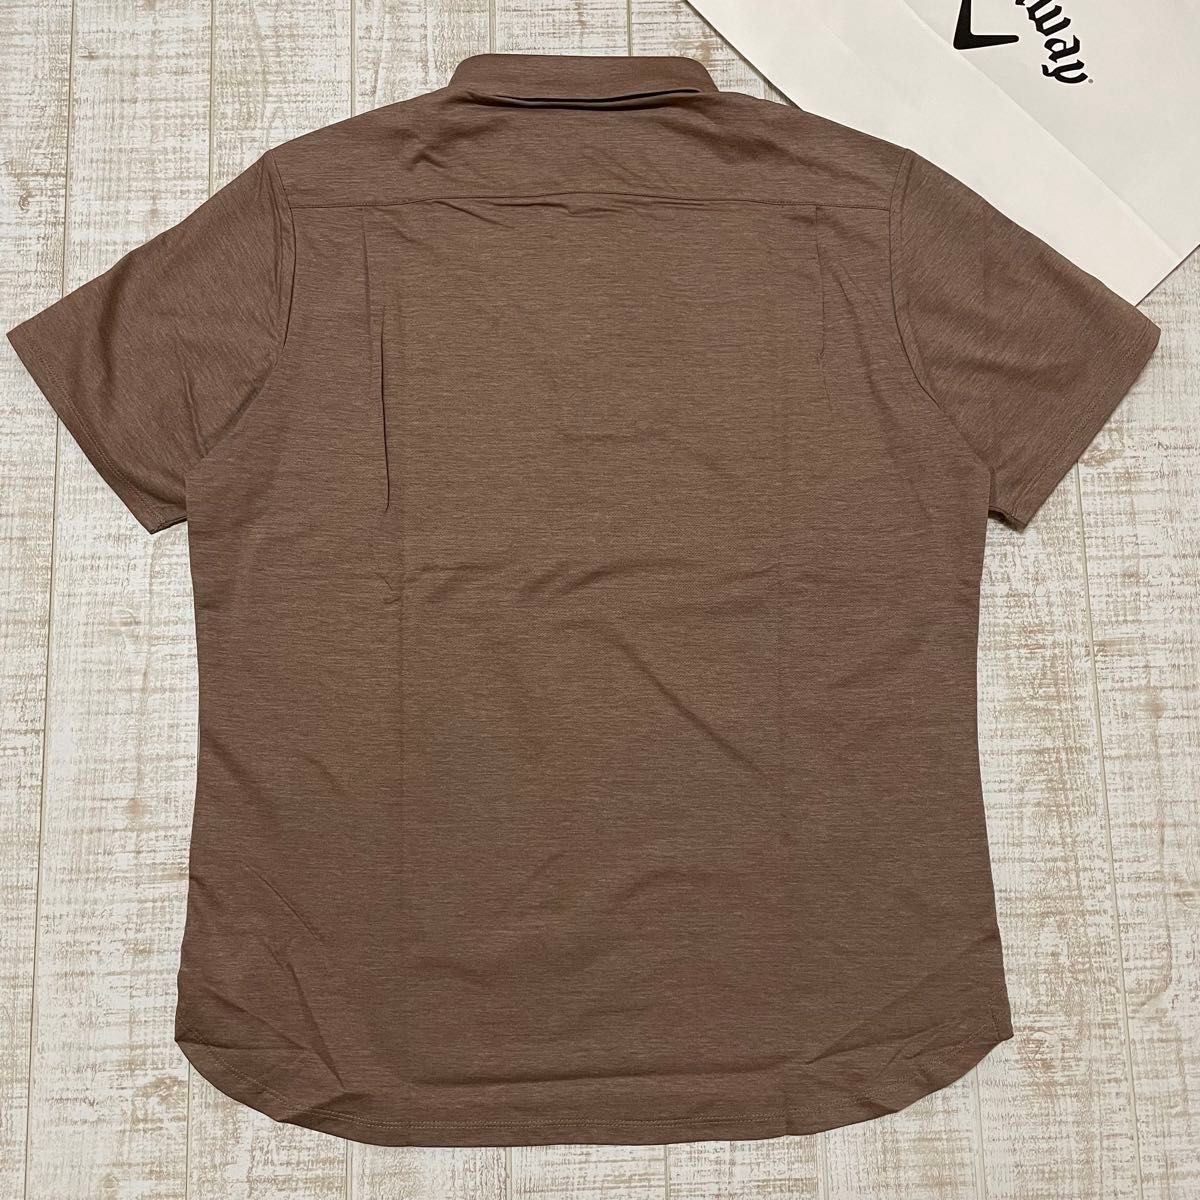 新品 キャロウェイ レッドレーベル 半袖シャツ シンプル ブラウン LLサイズ